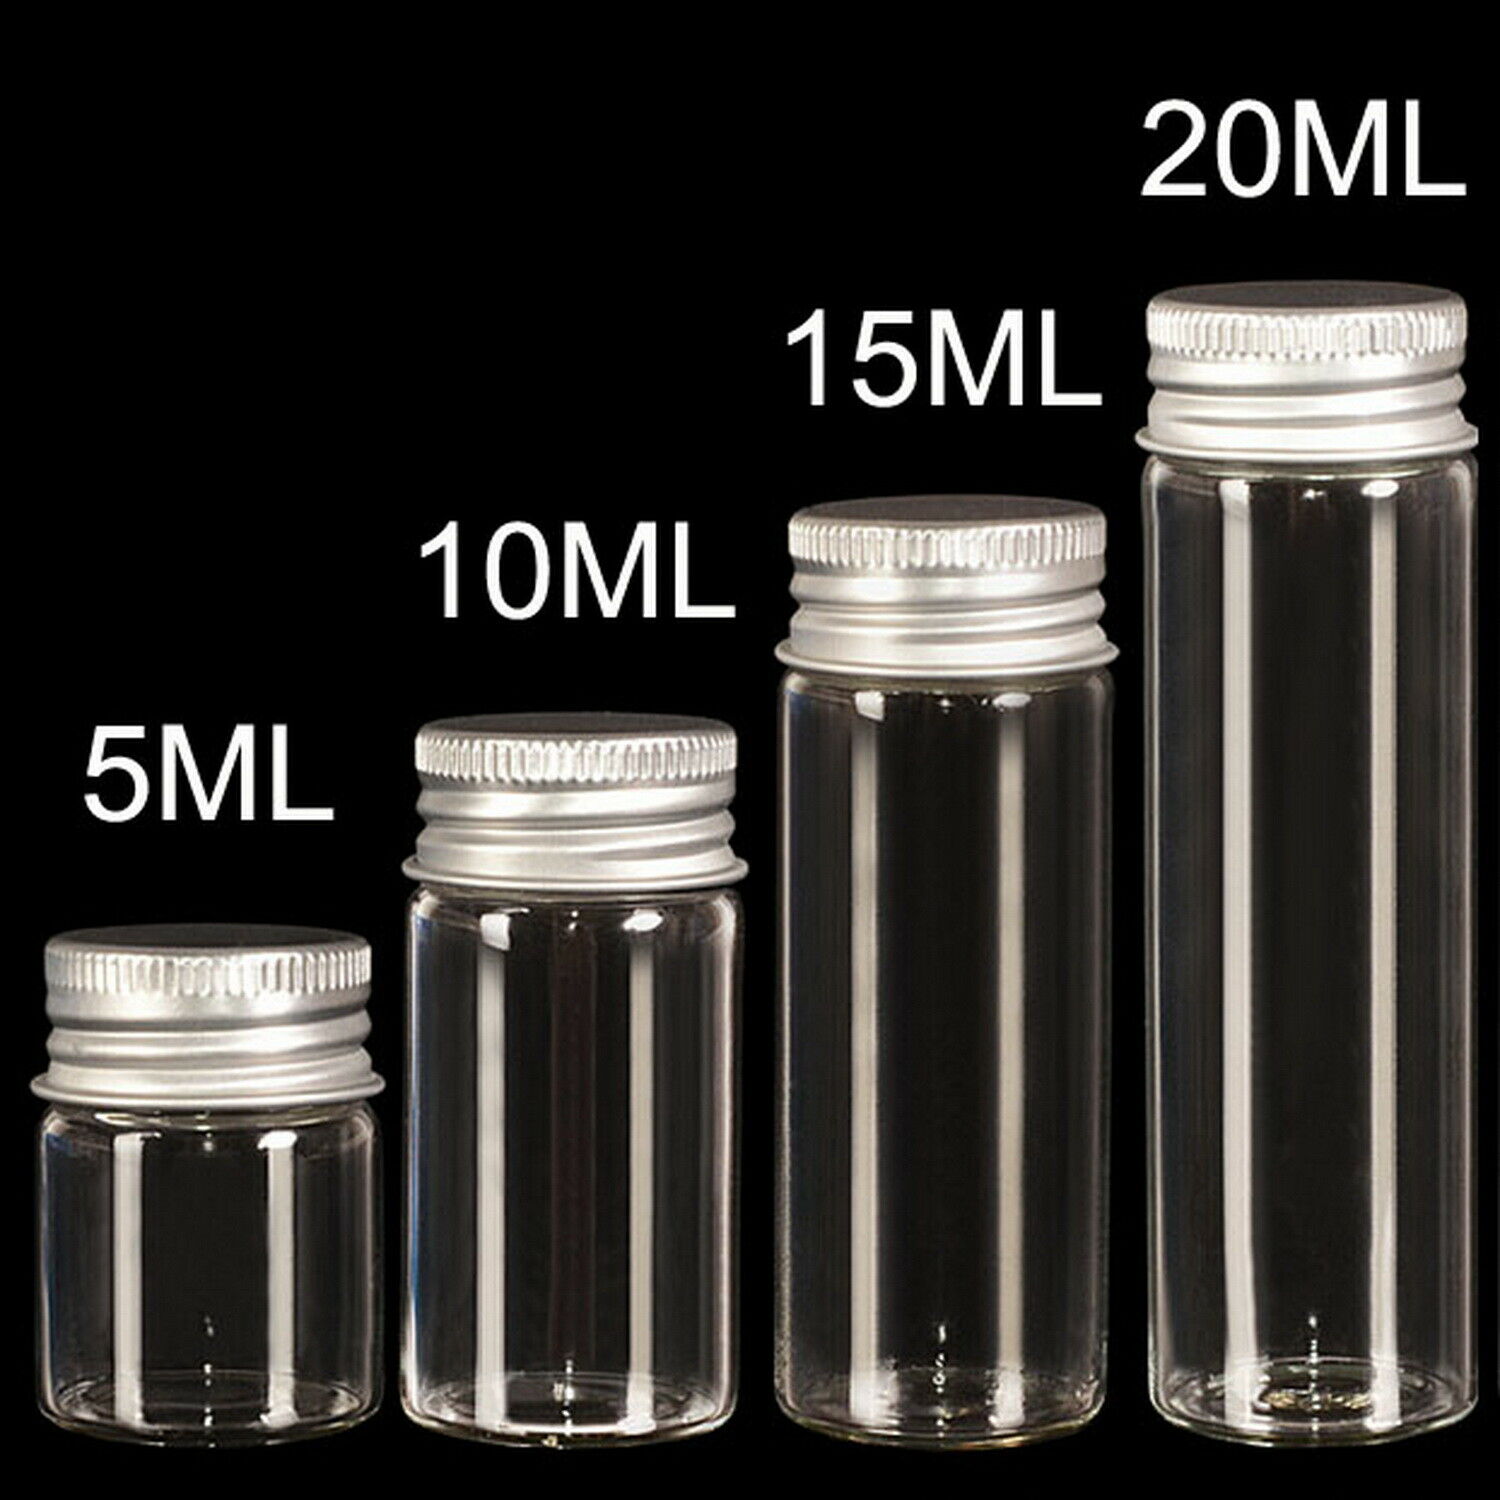 Lots of Small Glass Bottles with Aluminum Screw Cap Top Lids Cute Tiny Vials Jar